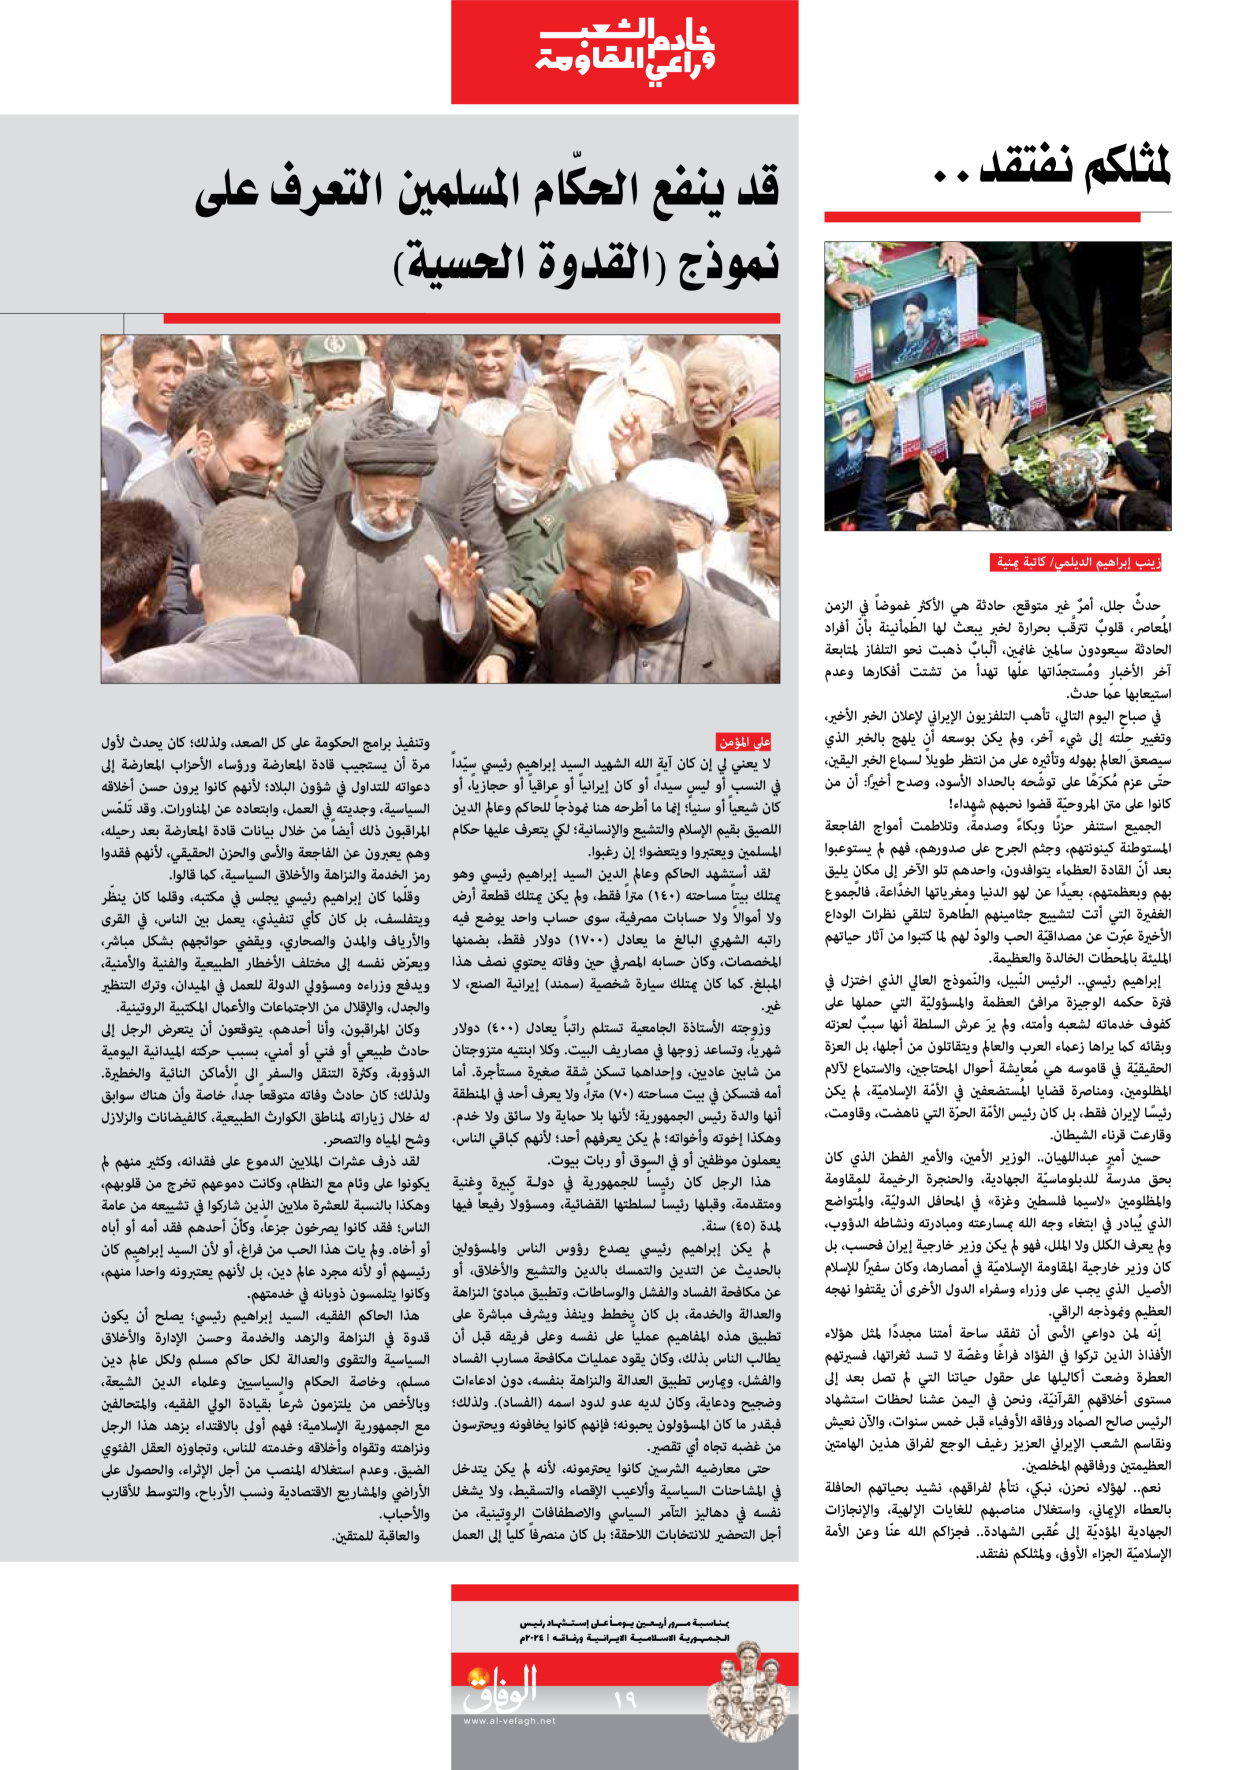 صحیفة ایران الدولیة الوفاق - ملحق ویژه نامه چهلم شهید رییسی - ٢٩ يونيو ٢٠٢٤ - الصفحة ۱۹